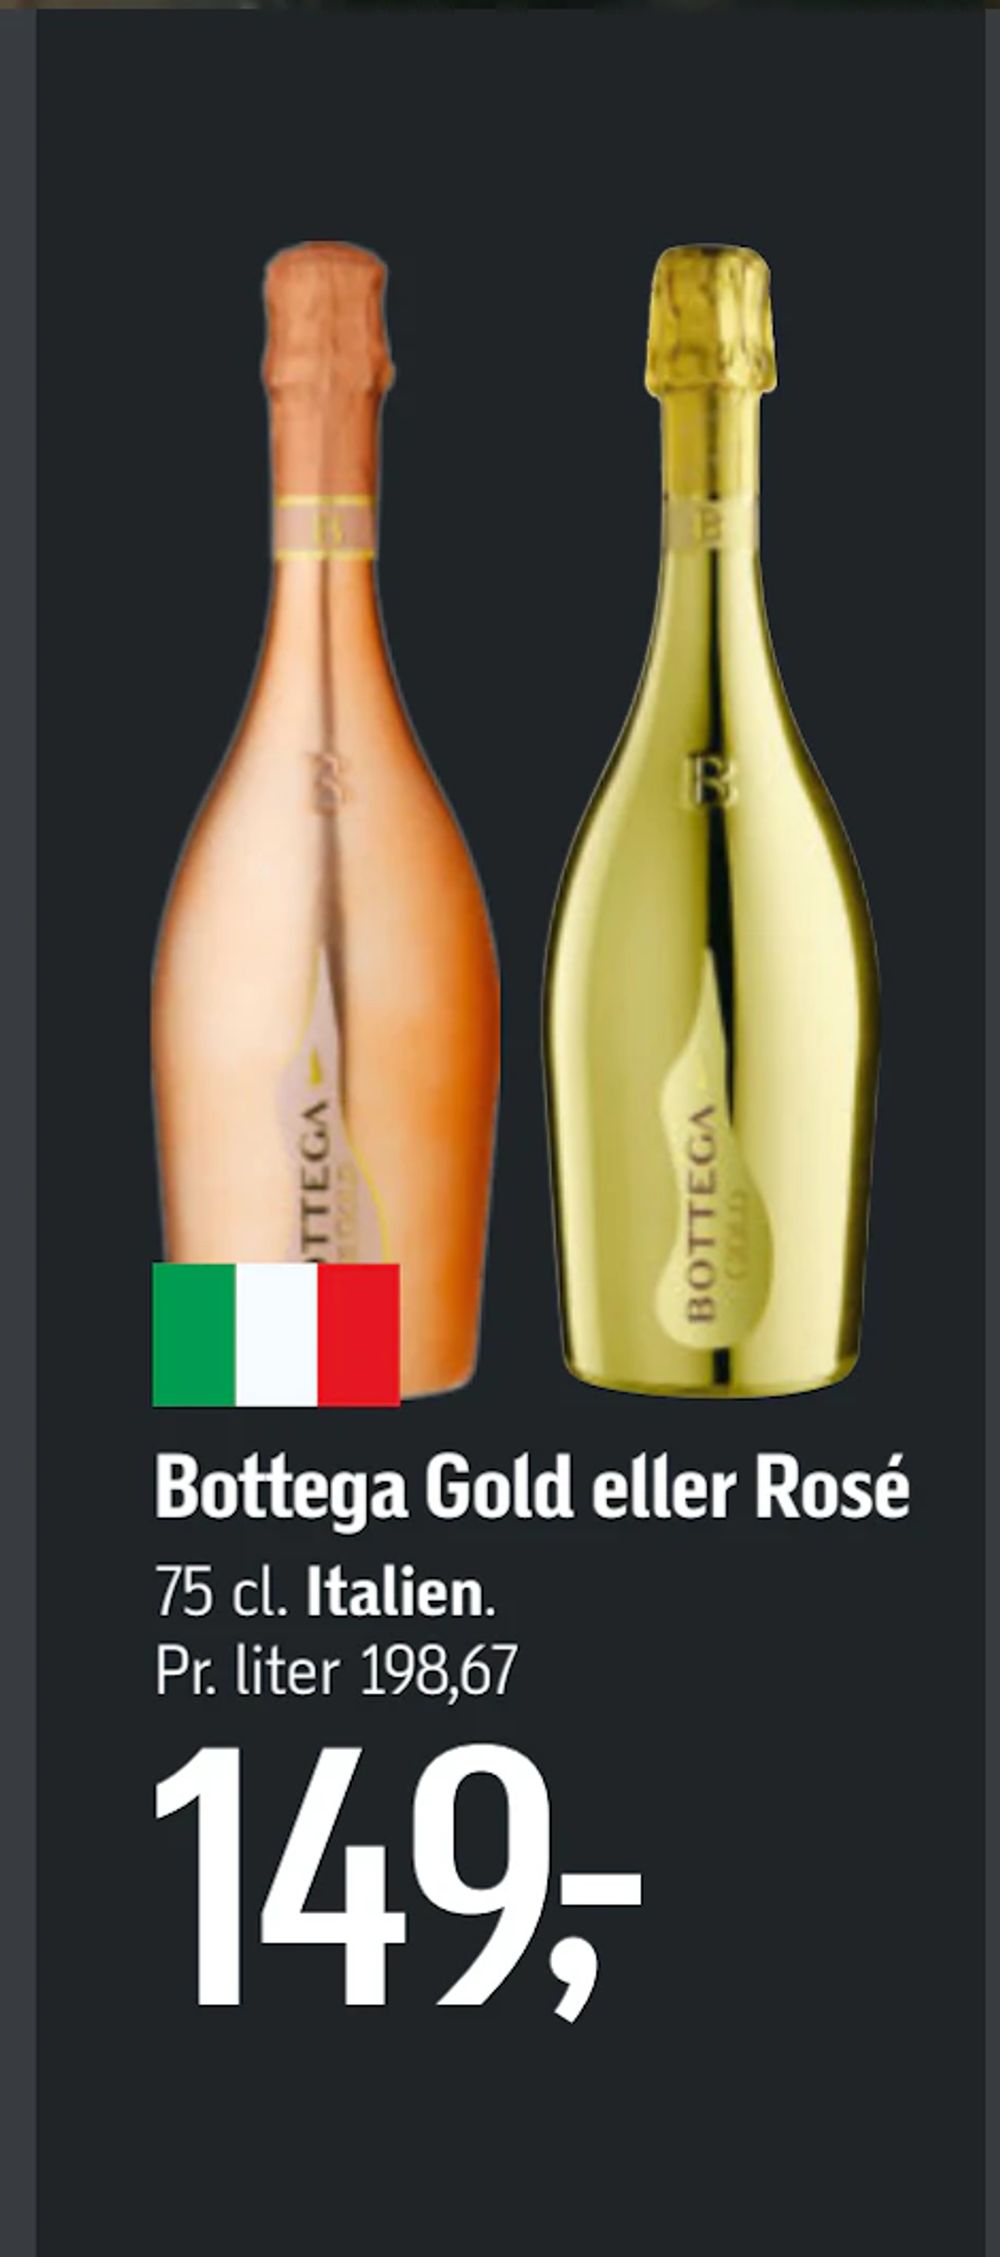 Tilbud på Bottega Gold eller Rosé fra føtex til 149 kr.